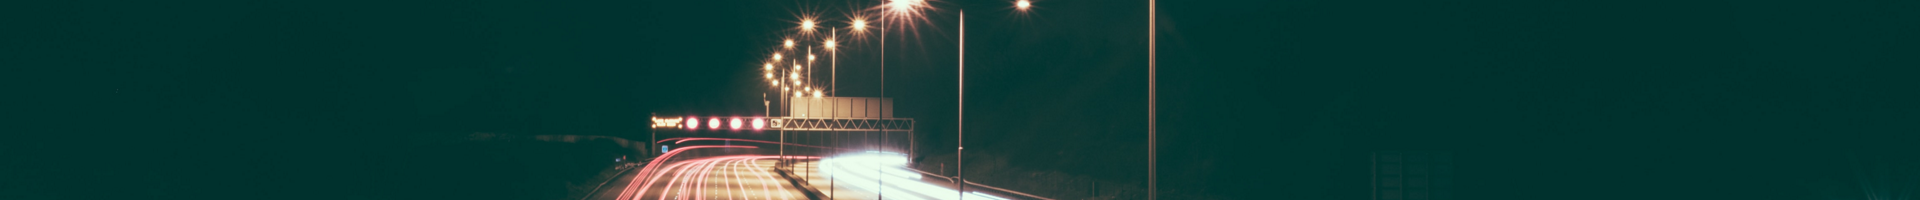 Заголовочное изображение страницы АСУНО «Светлый город» - Снимок освещения восьмиполосной автомагистрали с длительной выдержкой